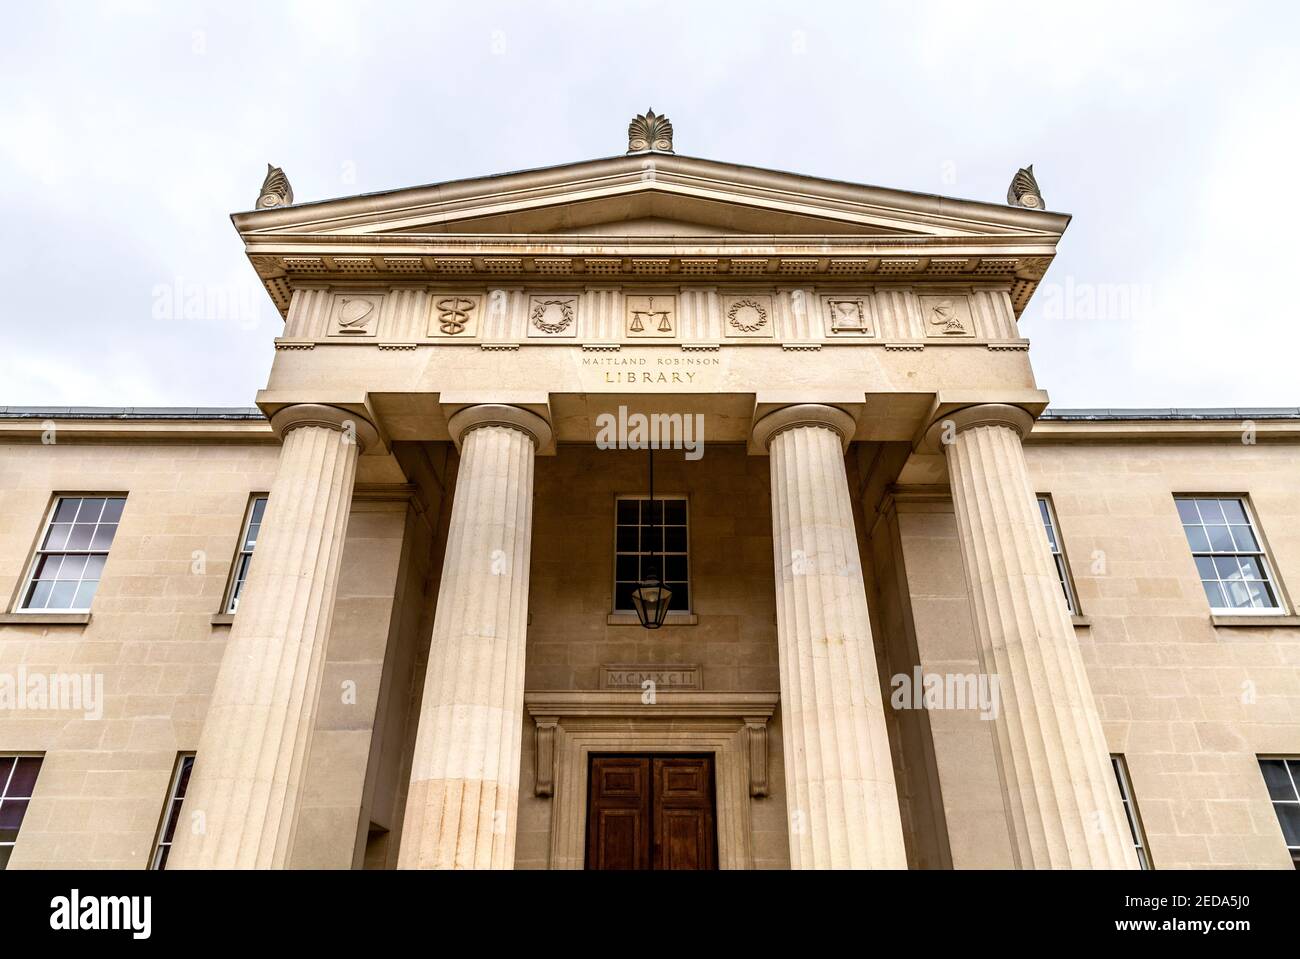 Portique de style néo-classique avec colonnes de pédiment et doric à la bibliothèque Maitland Robinson, Downing College, Cambridge, Royaume-Uni Banque D'Images